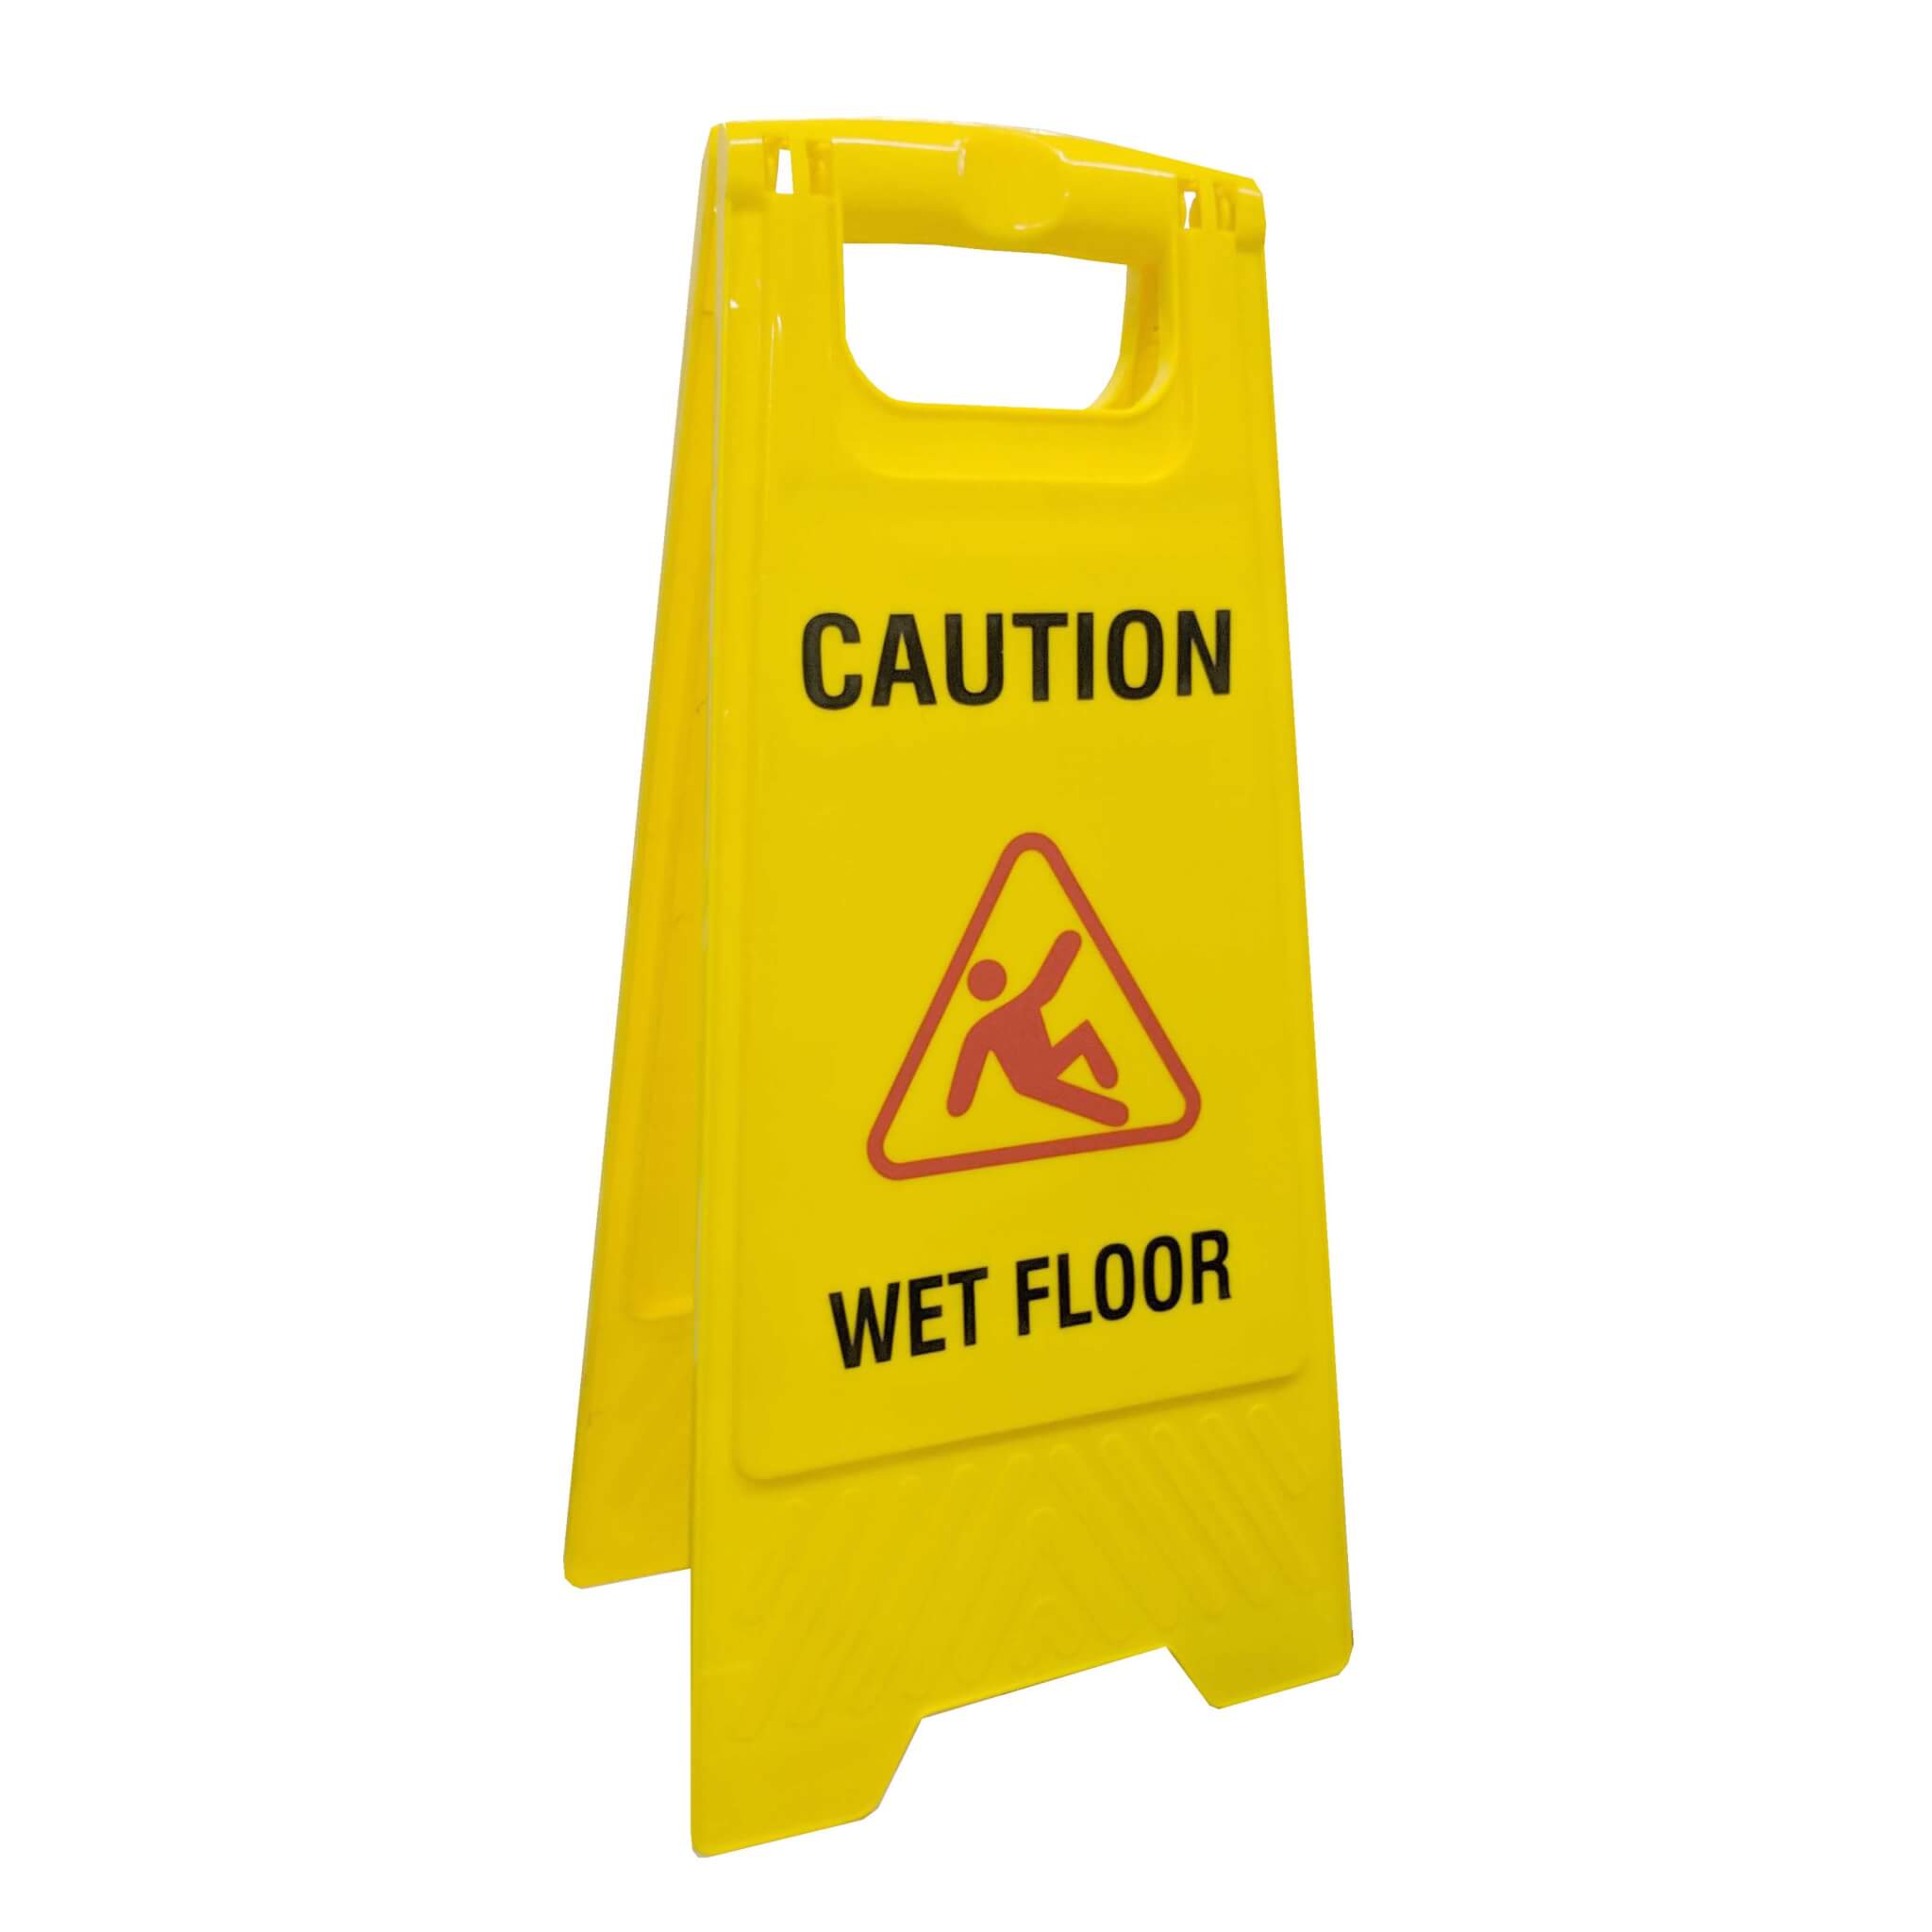 A1 Wet Floor Sign